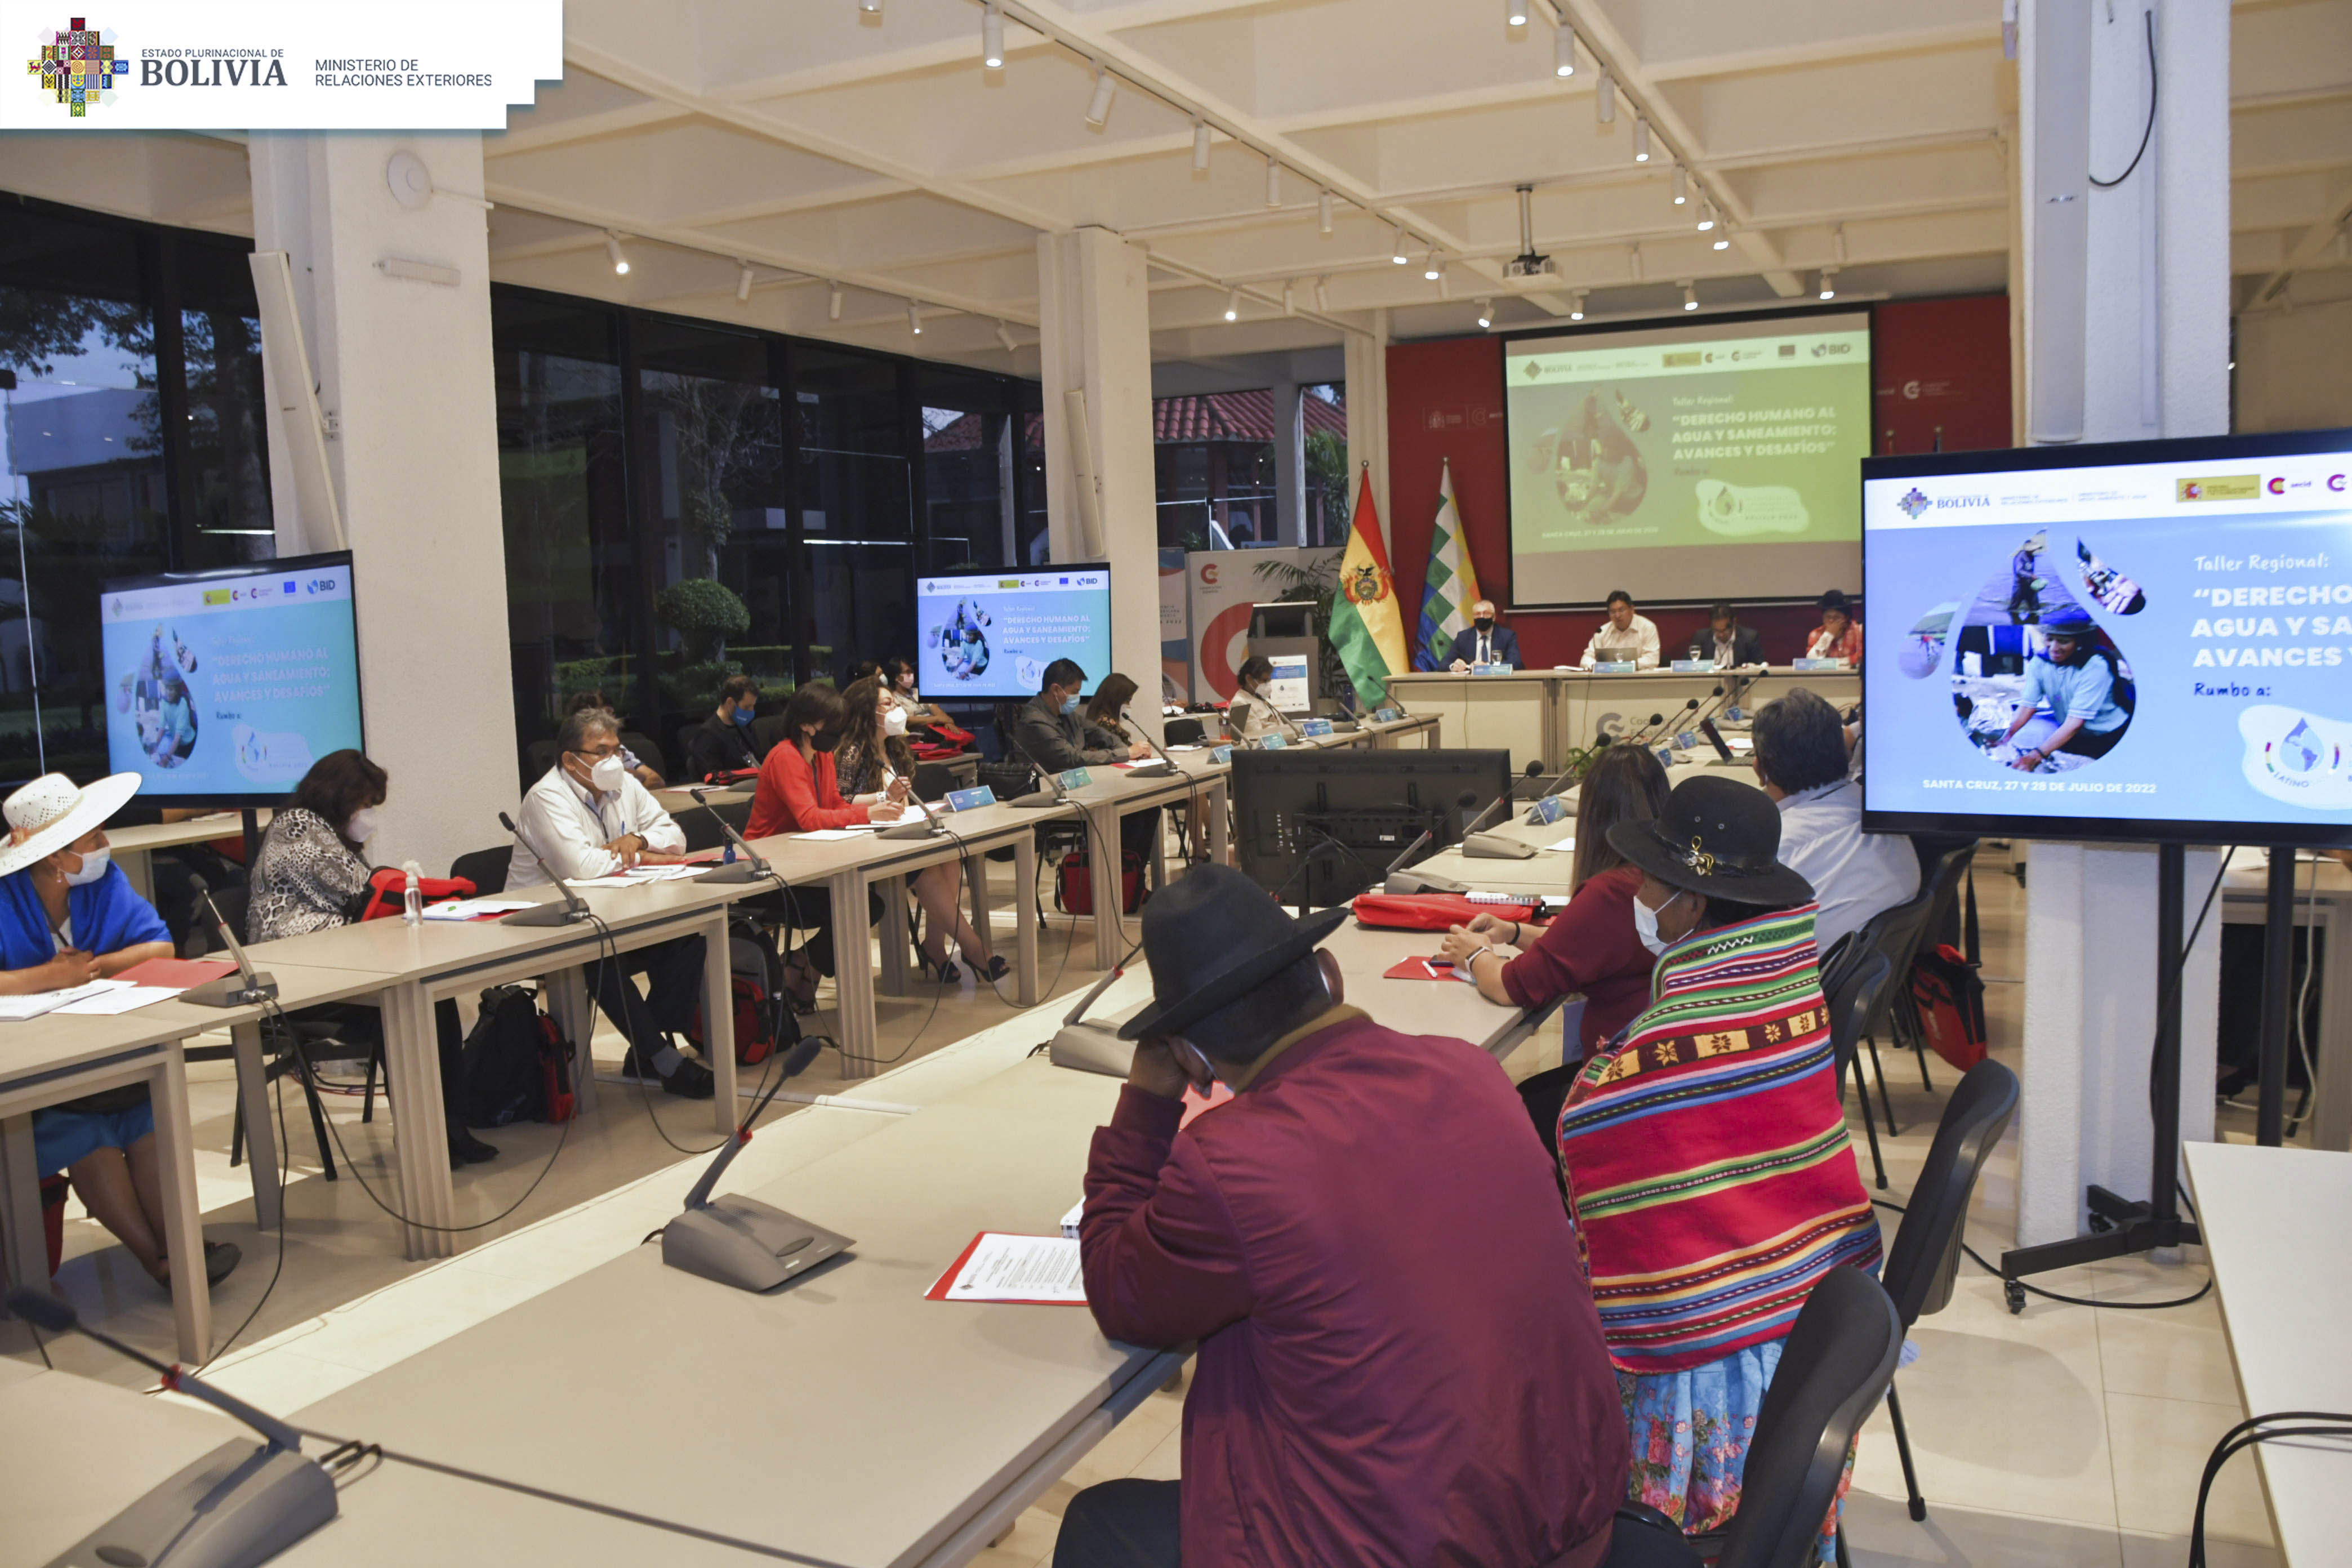 Rumbo a la Sexta Conferencia Latinoamericana y Caribeña de Saneamiento “VI LATINOSAN”; encuentro regional busca generar la cultura del cuidado al agua y el saneamiento